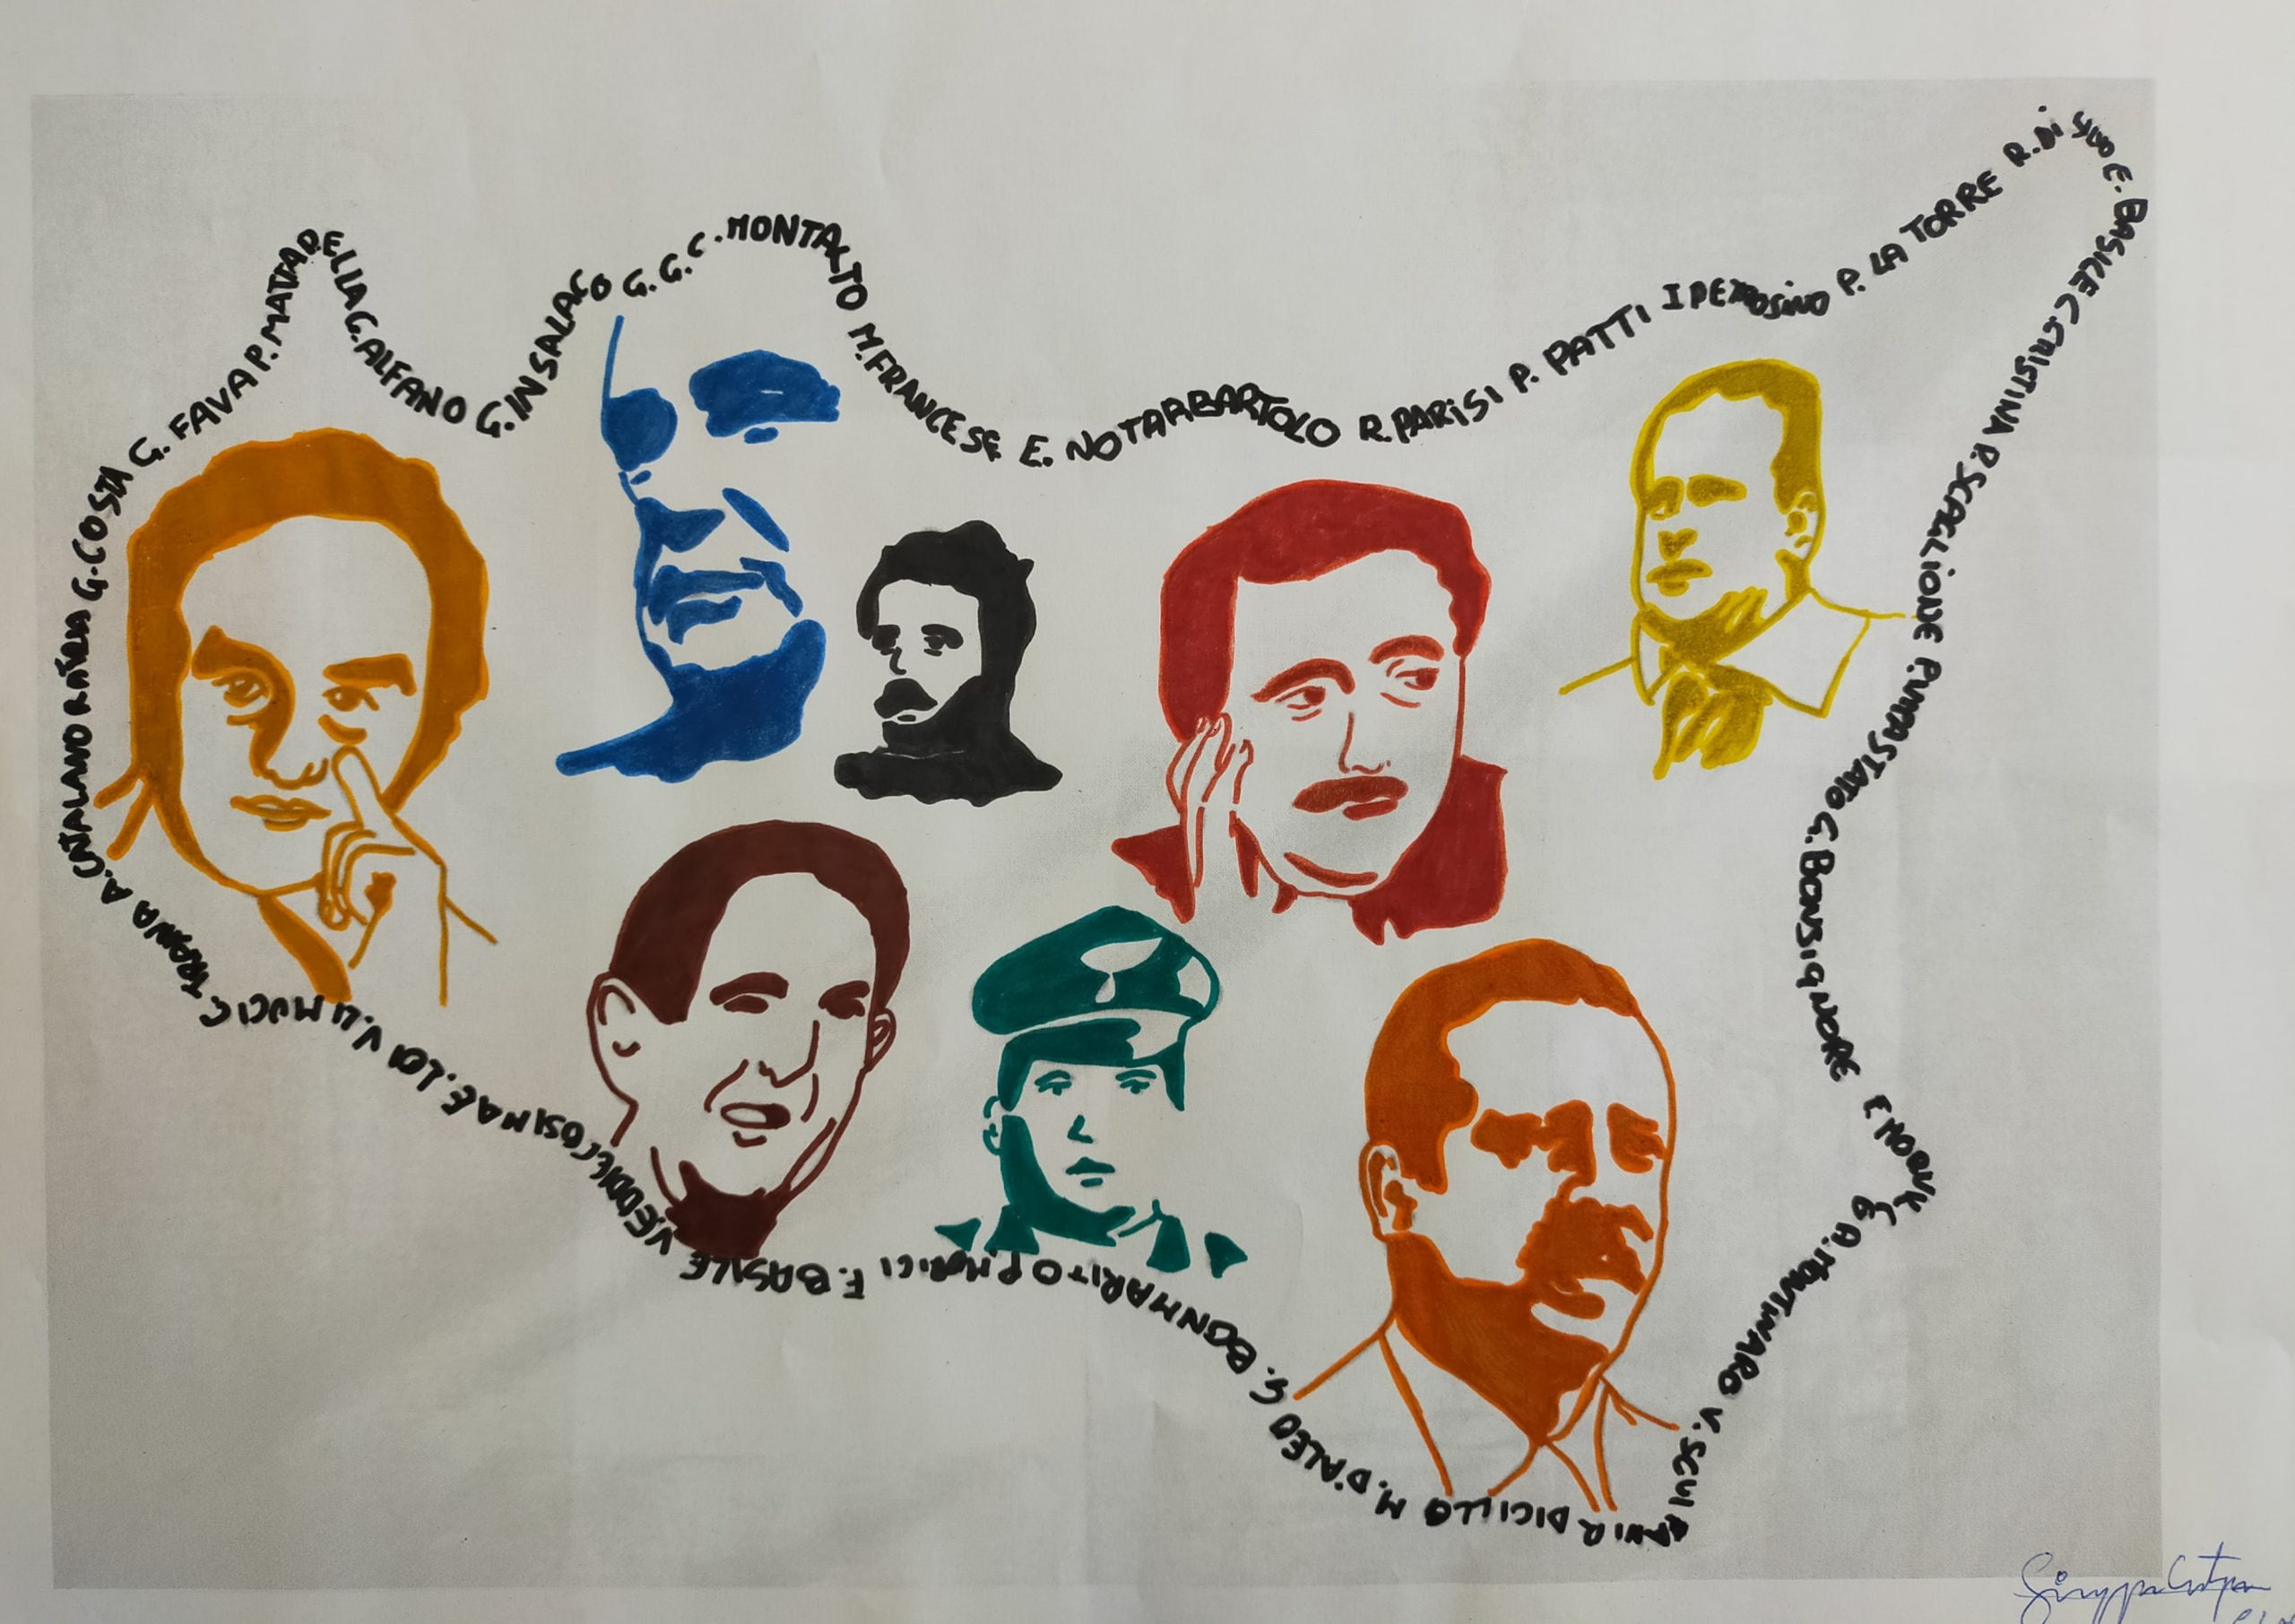 disegno realizzato dall'allievo del cirpe che rappresenta la sicilia con i volti di tutte le persone che hanno contrastato la mafia